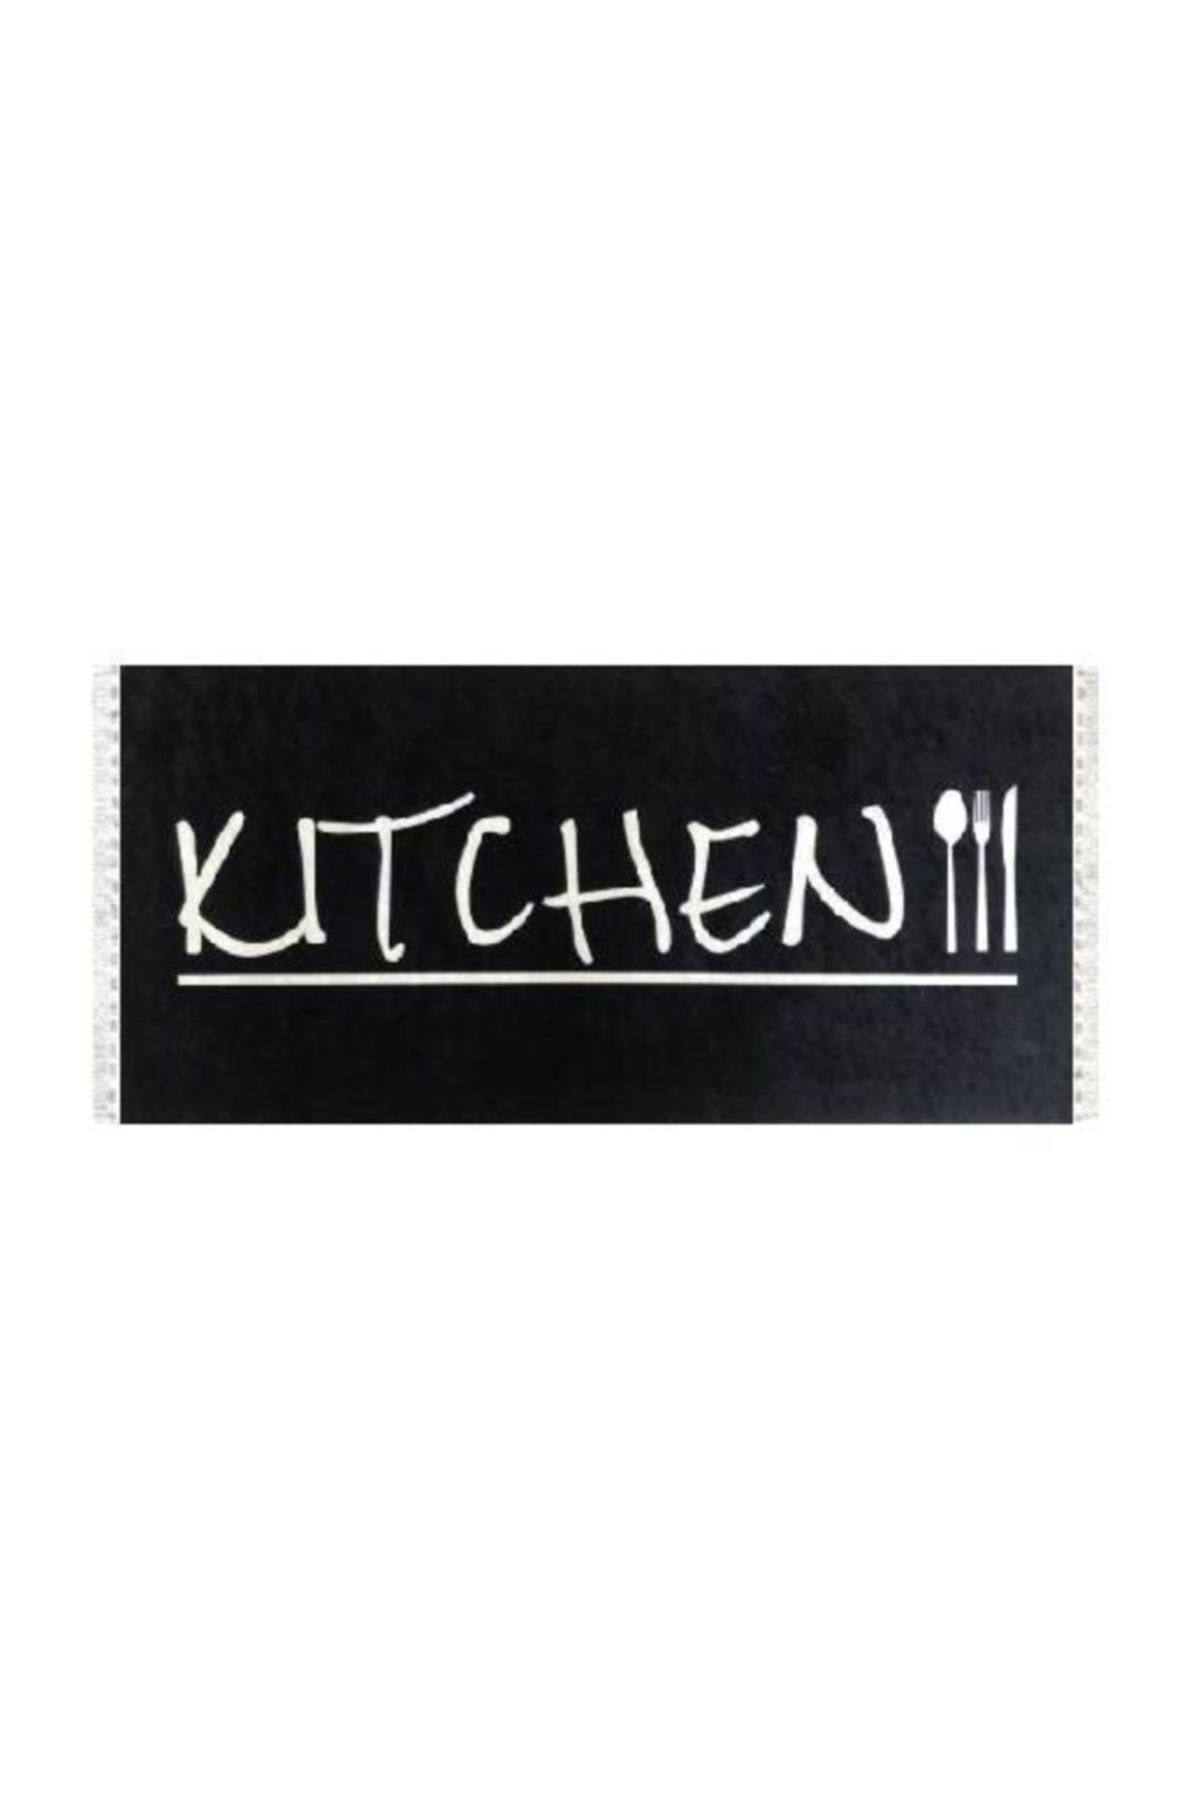 Belemir B224 Kitchen Dekoratif Yıkanabilir Halı 100x140